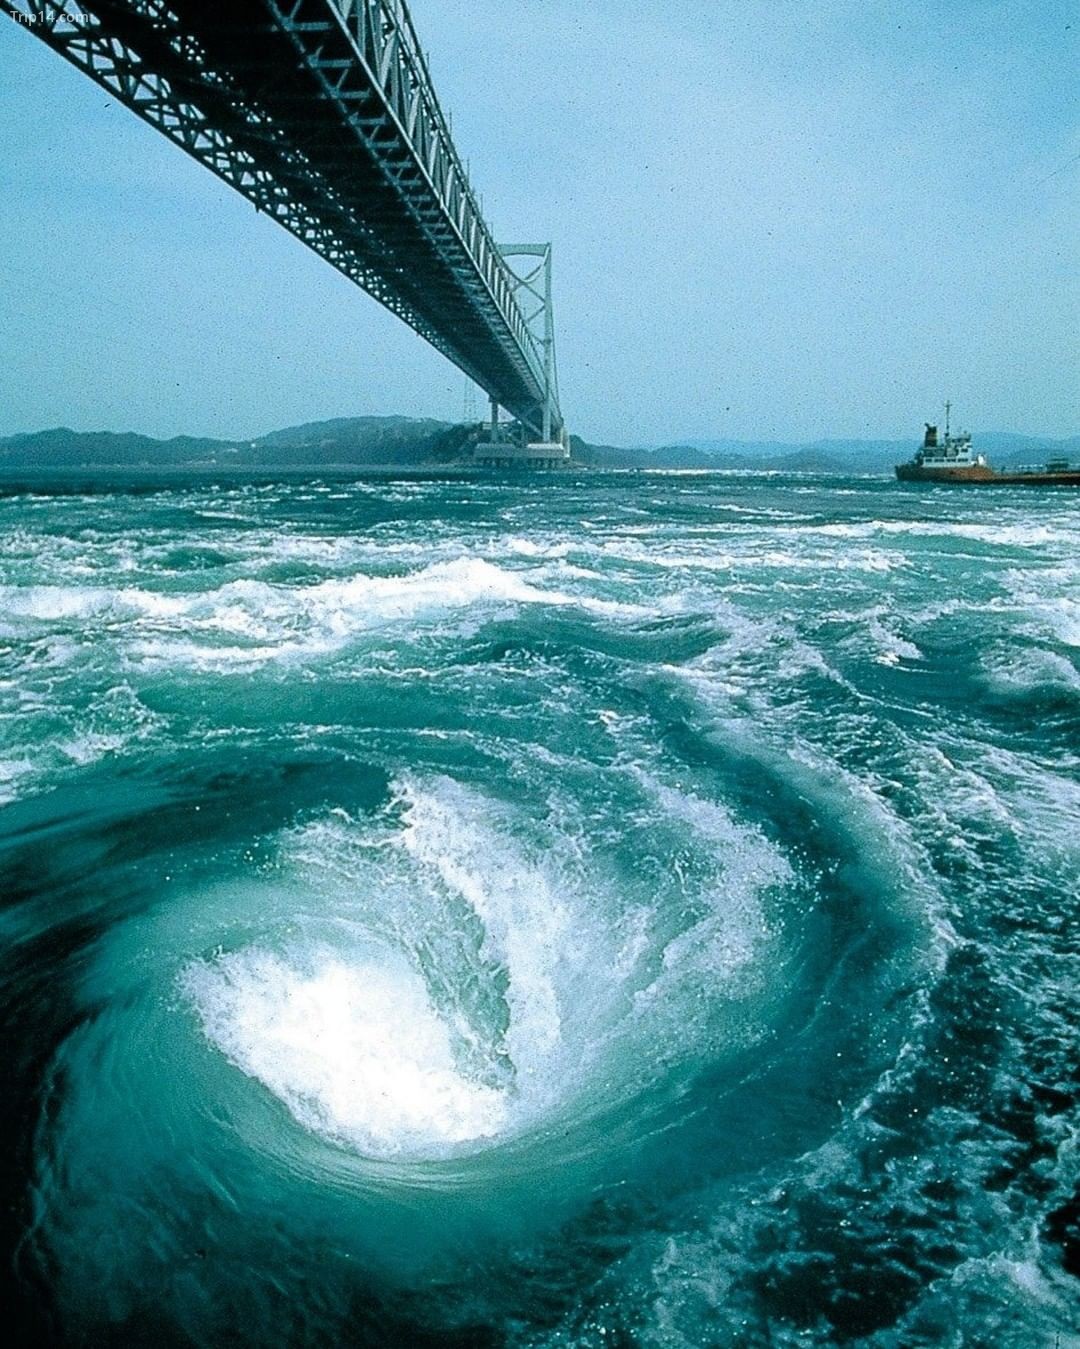 Xoáy nước Naruto là một hiện tượng tự nhiên đầy ngoạn mục diễn ra khi thủy triều lên xuống ở eo biển Naruto của tỉnh Tokushima, Nhật Bản